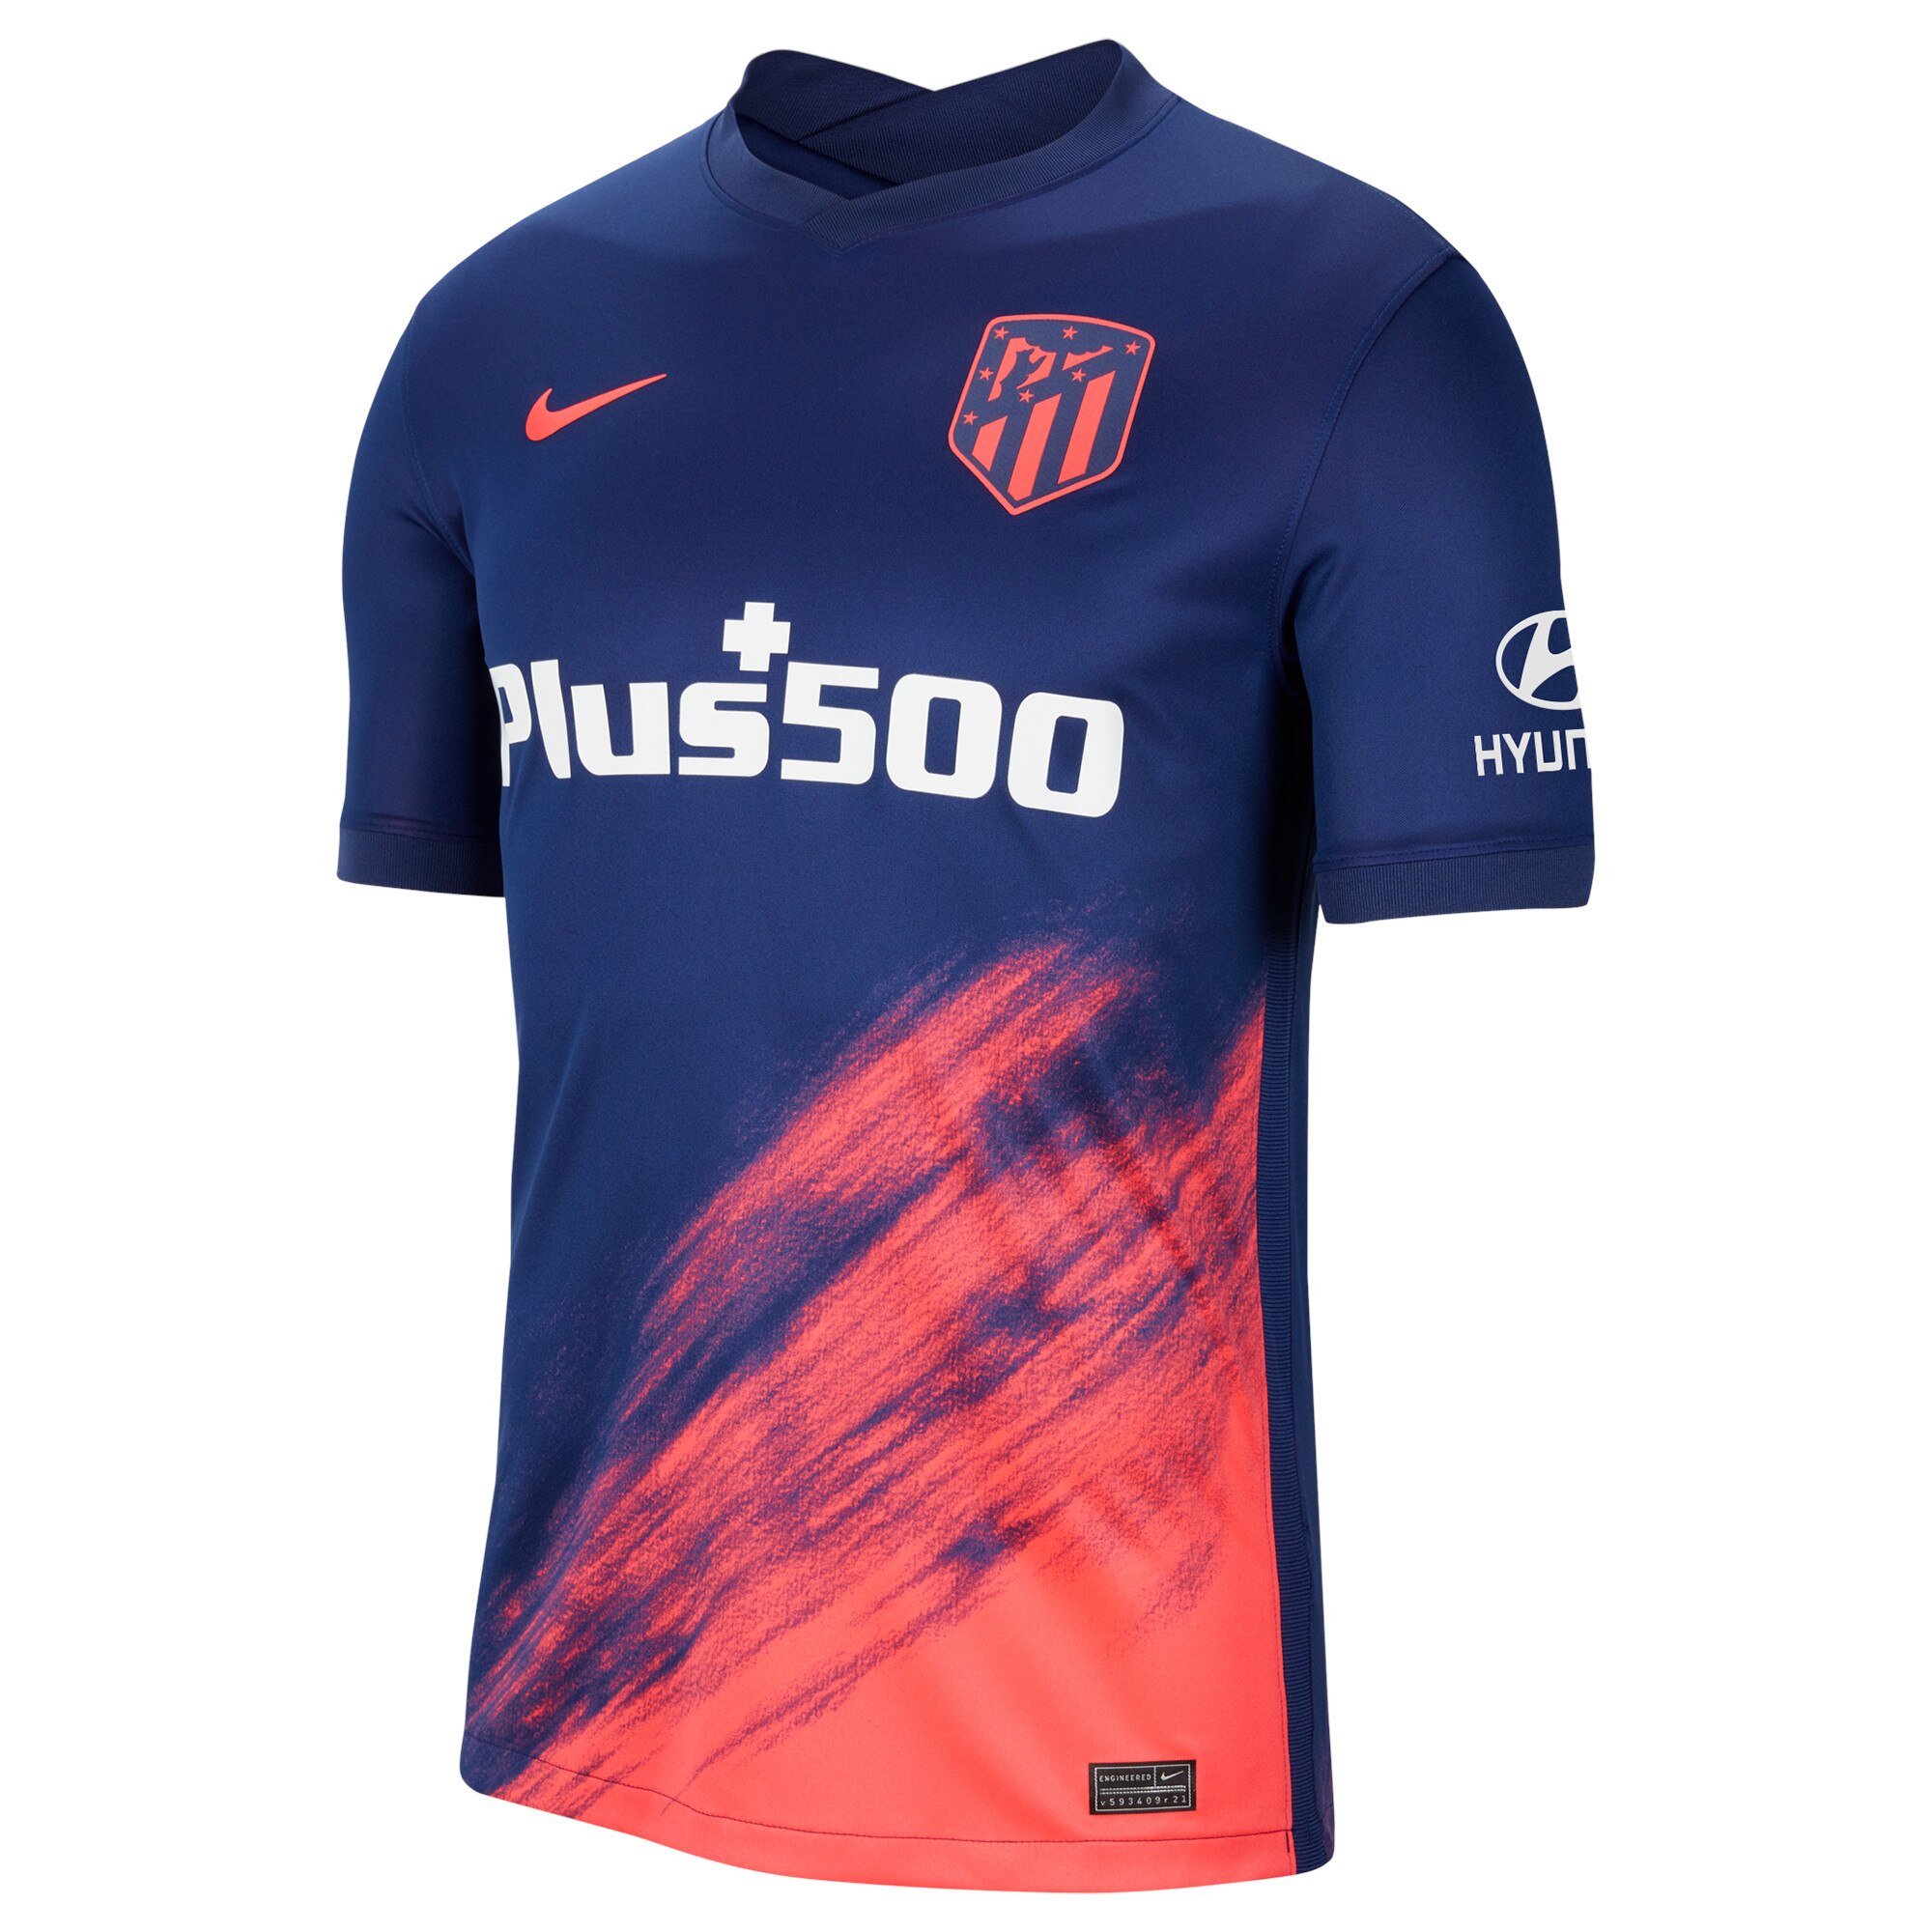 Atlético de Madrid Away Stadium Shirt 2021-22 with Reinildo 23 printing